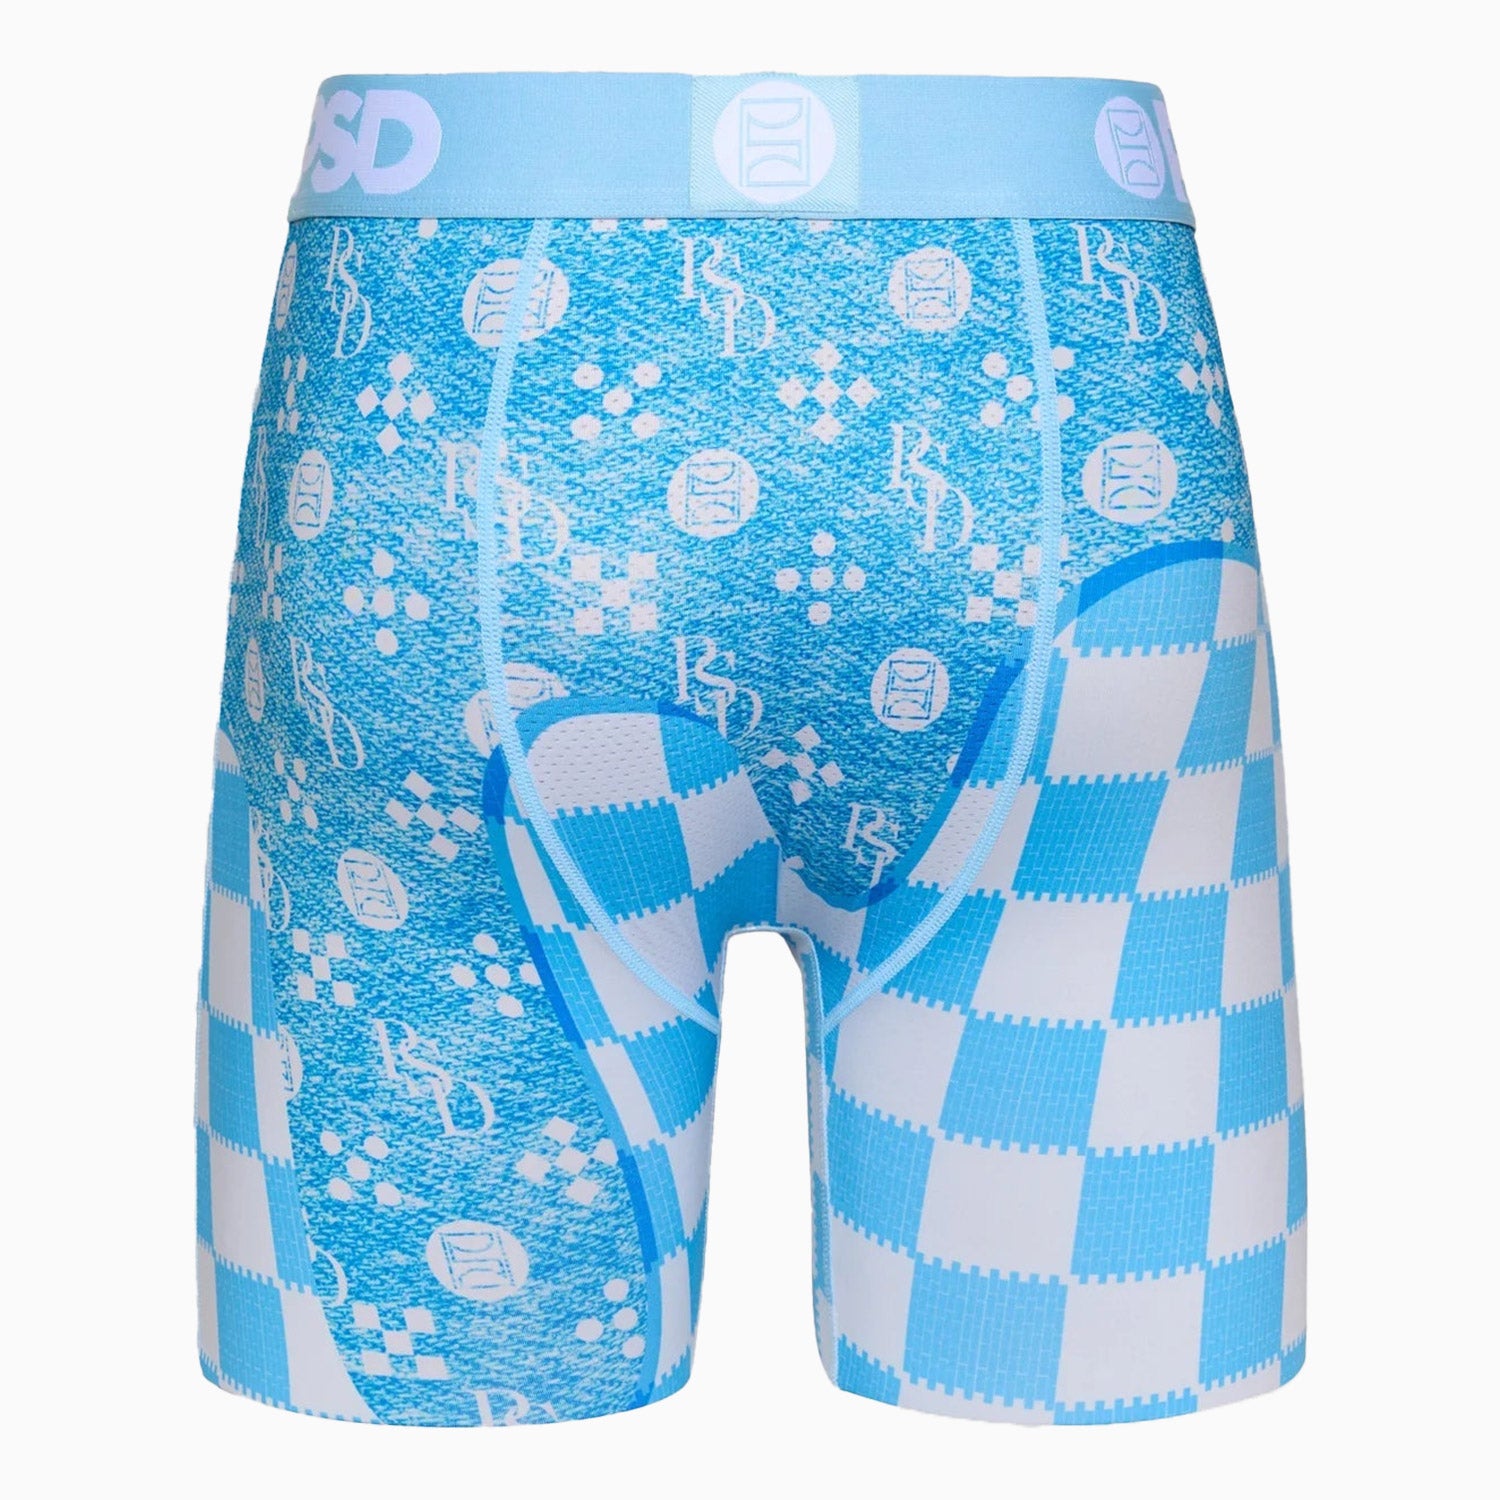 psd-underwear-mens-blue-denim-drip-brief-boxer-124180010